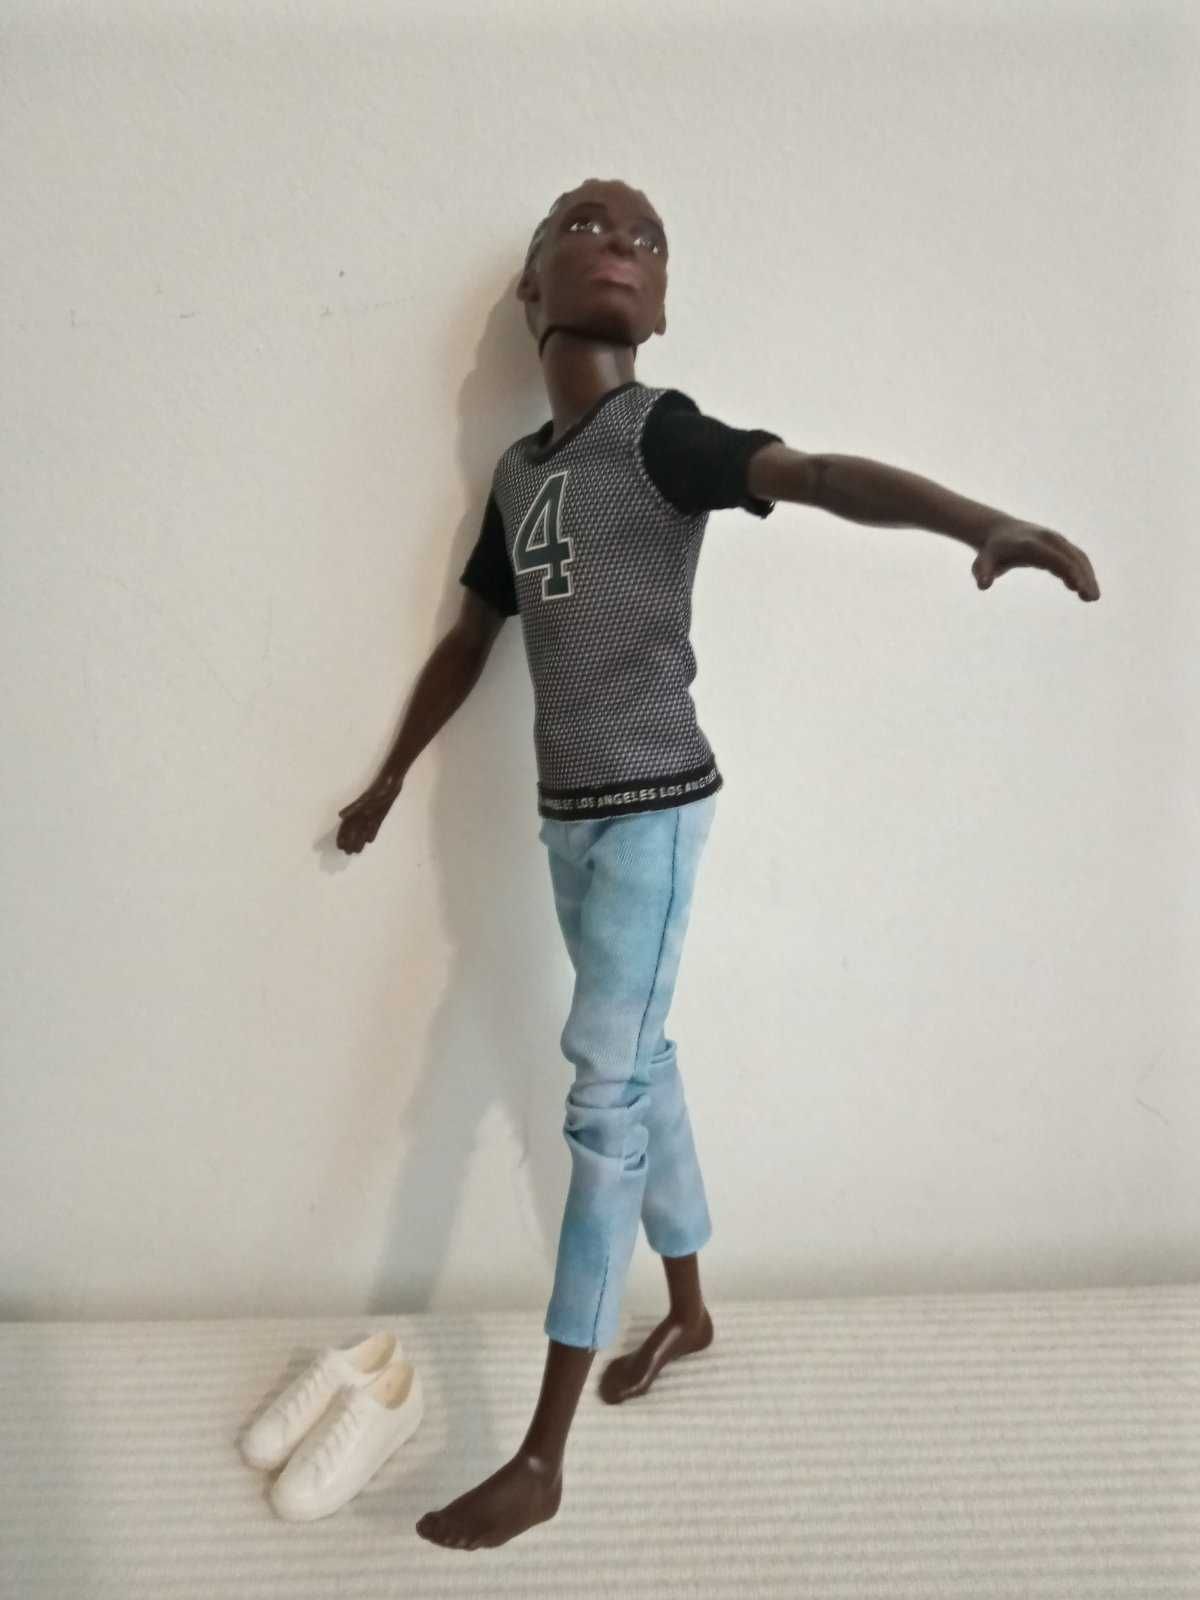 кукла Кен -Mattel афроамериканец